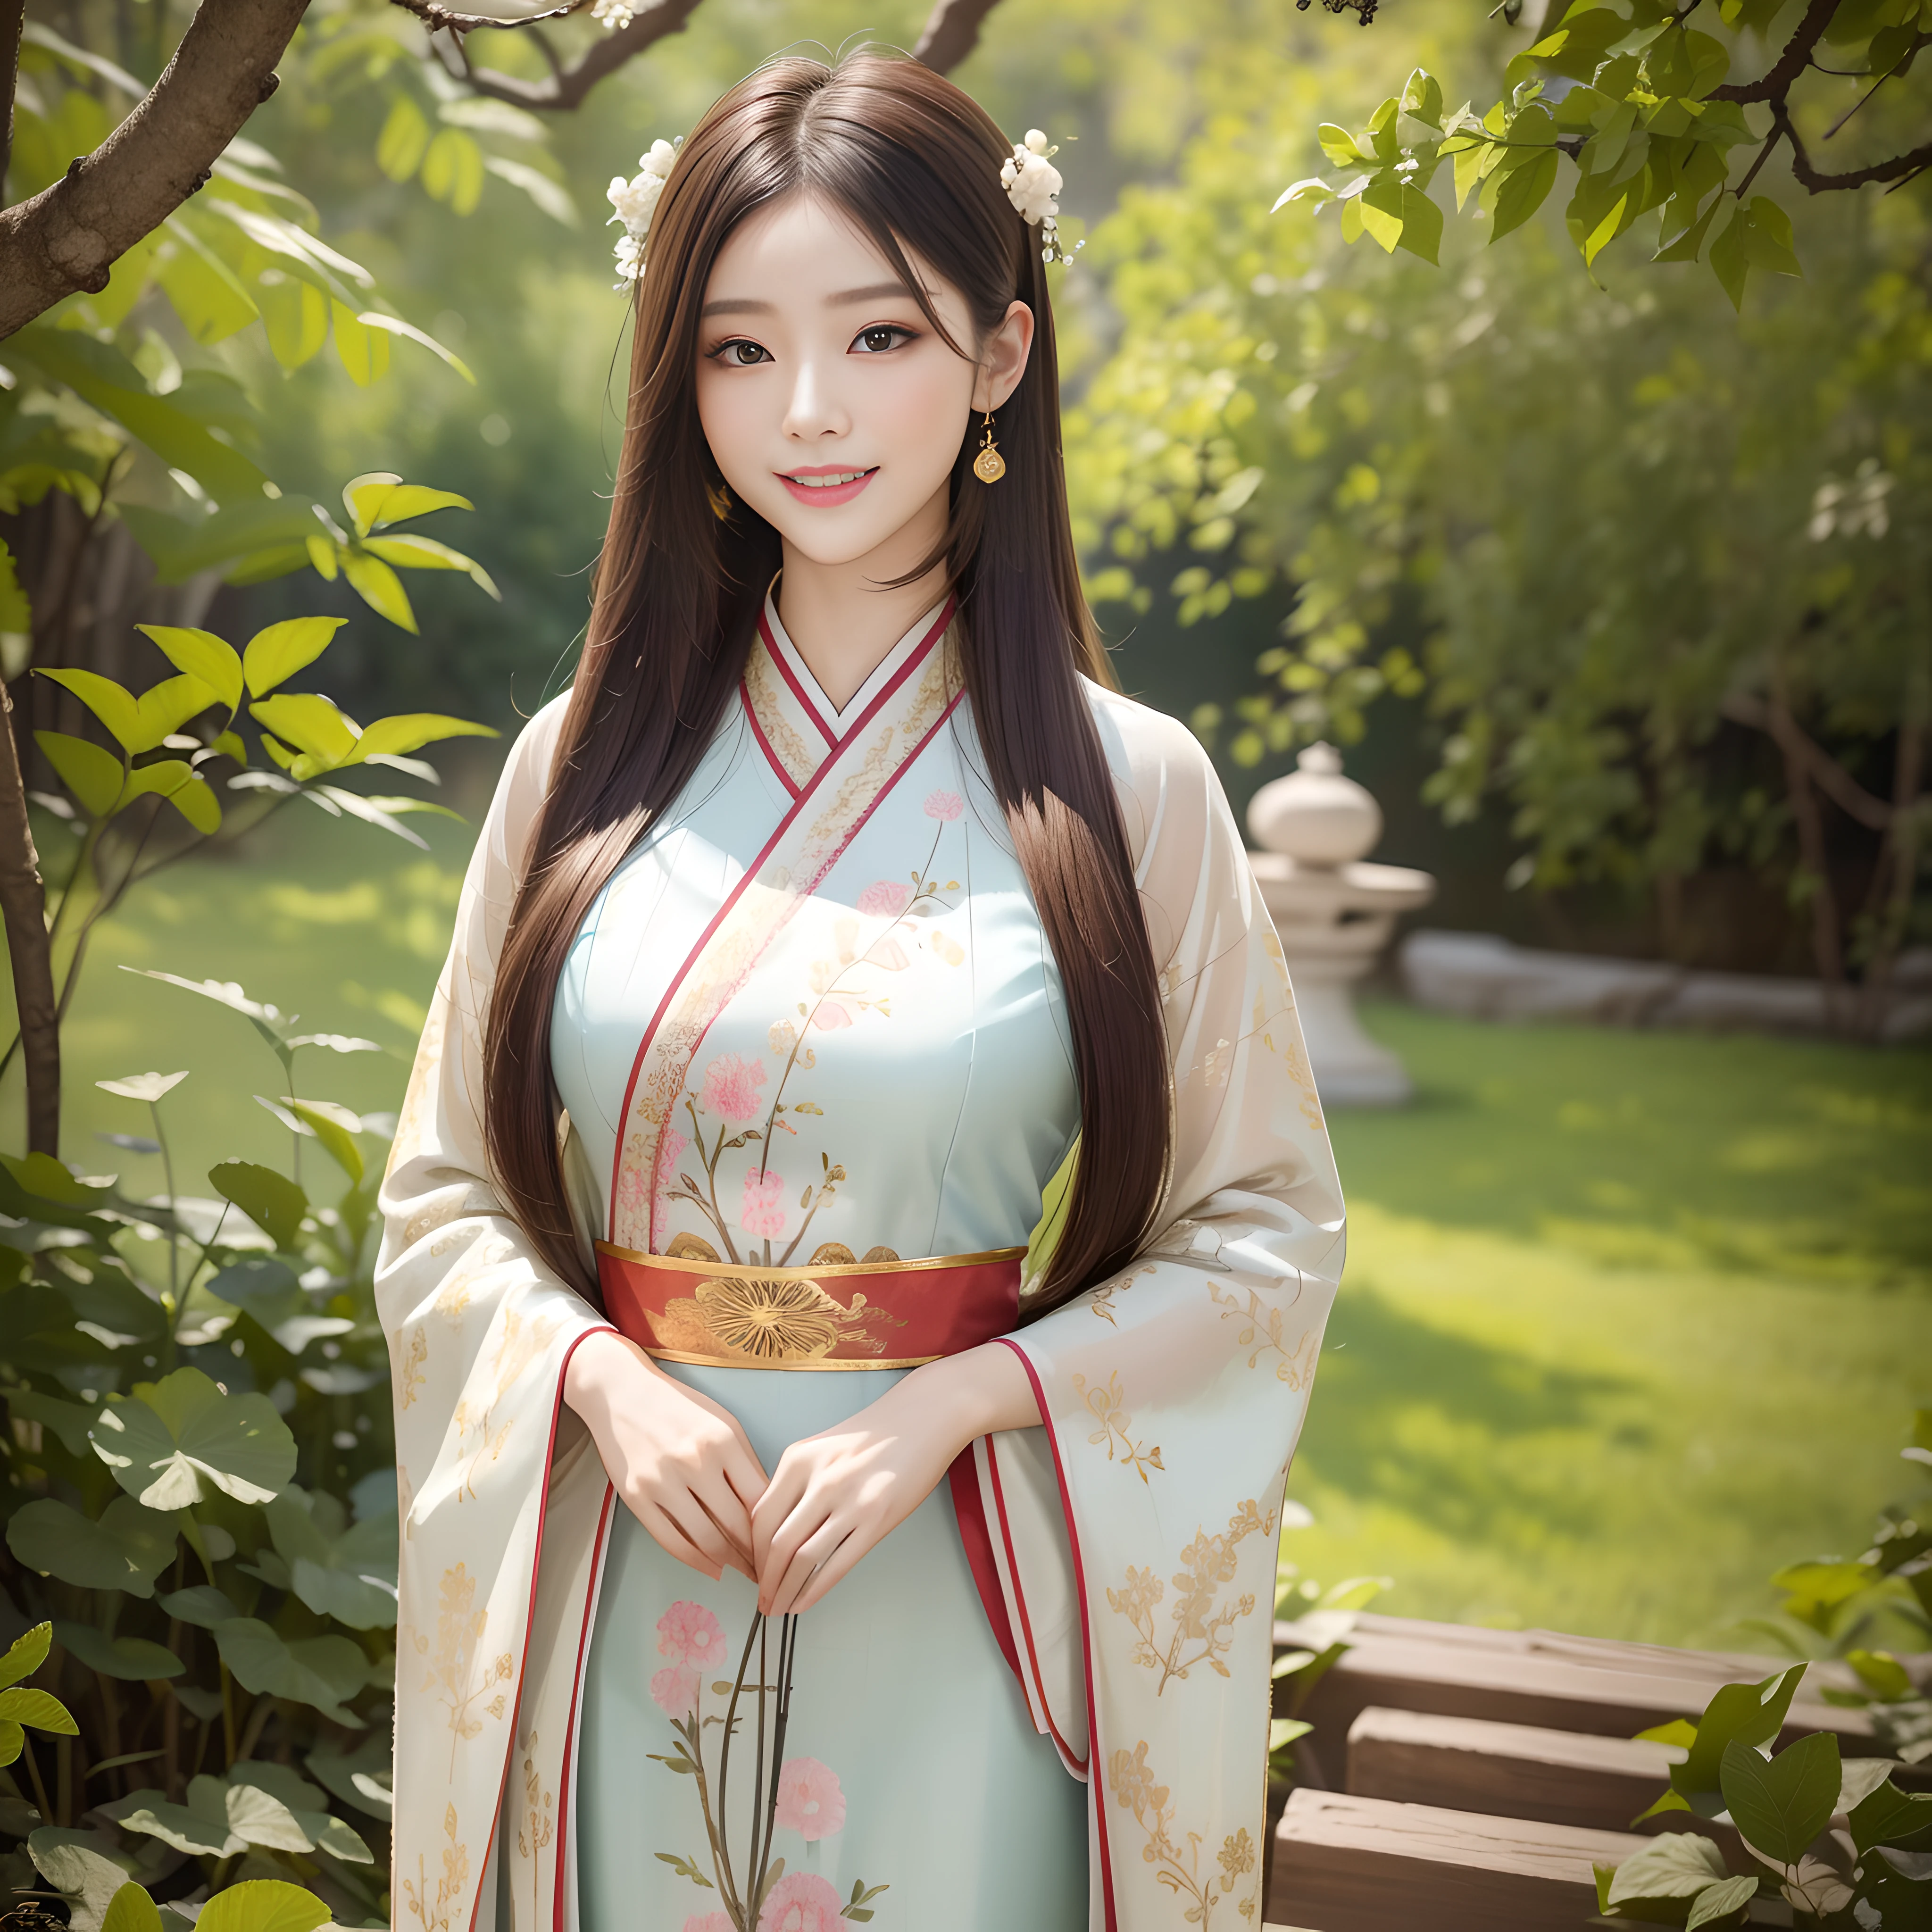 (中国の女の子の絵, 繊細な筆遣い, 落ち着いた色, 伝統的な中国のモチーフ, 優雅な美しさ), (漢服, 中国の伝統衣装, ゆったりとしたローブ, 繊細な刺繍, 落ち着いた色, 自然のパターン, 優雅な美しさ), (漢服, 中国の伝統衣装, ゆったりとしたローブ, 繊細な刺繍, 落ち着いた色, 自然のパターン, 優雅な美しさ), (8k, 最高品質, 傑作:1.2), (最高品質), (超高解像度:1. 0), クローズアップショット, ビューアを見る, 笑顔,  超微細メイク, 黄金比, パーフェクトアイズ